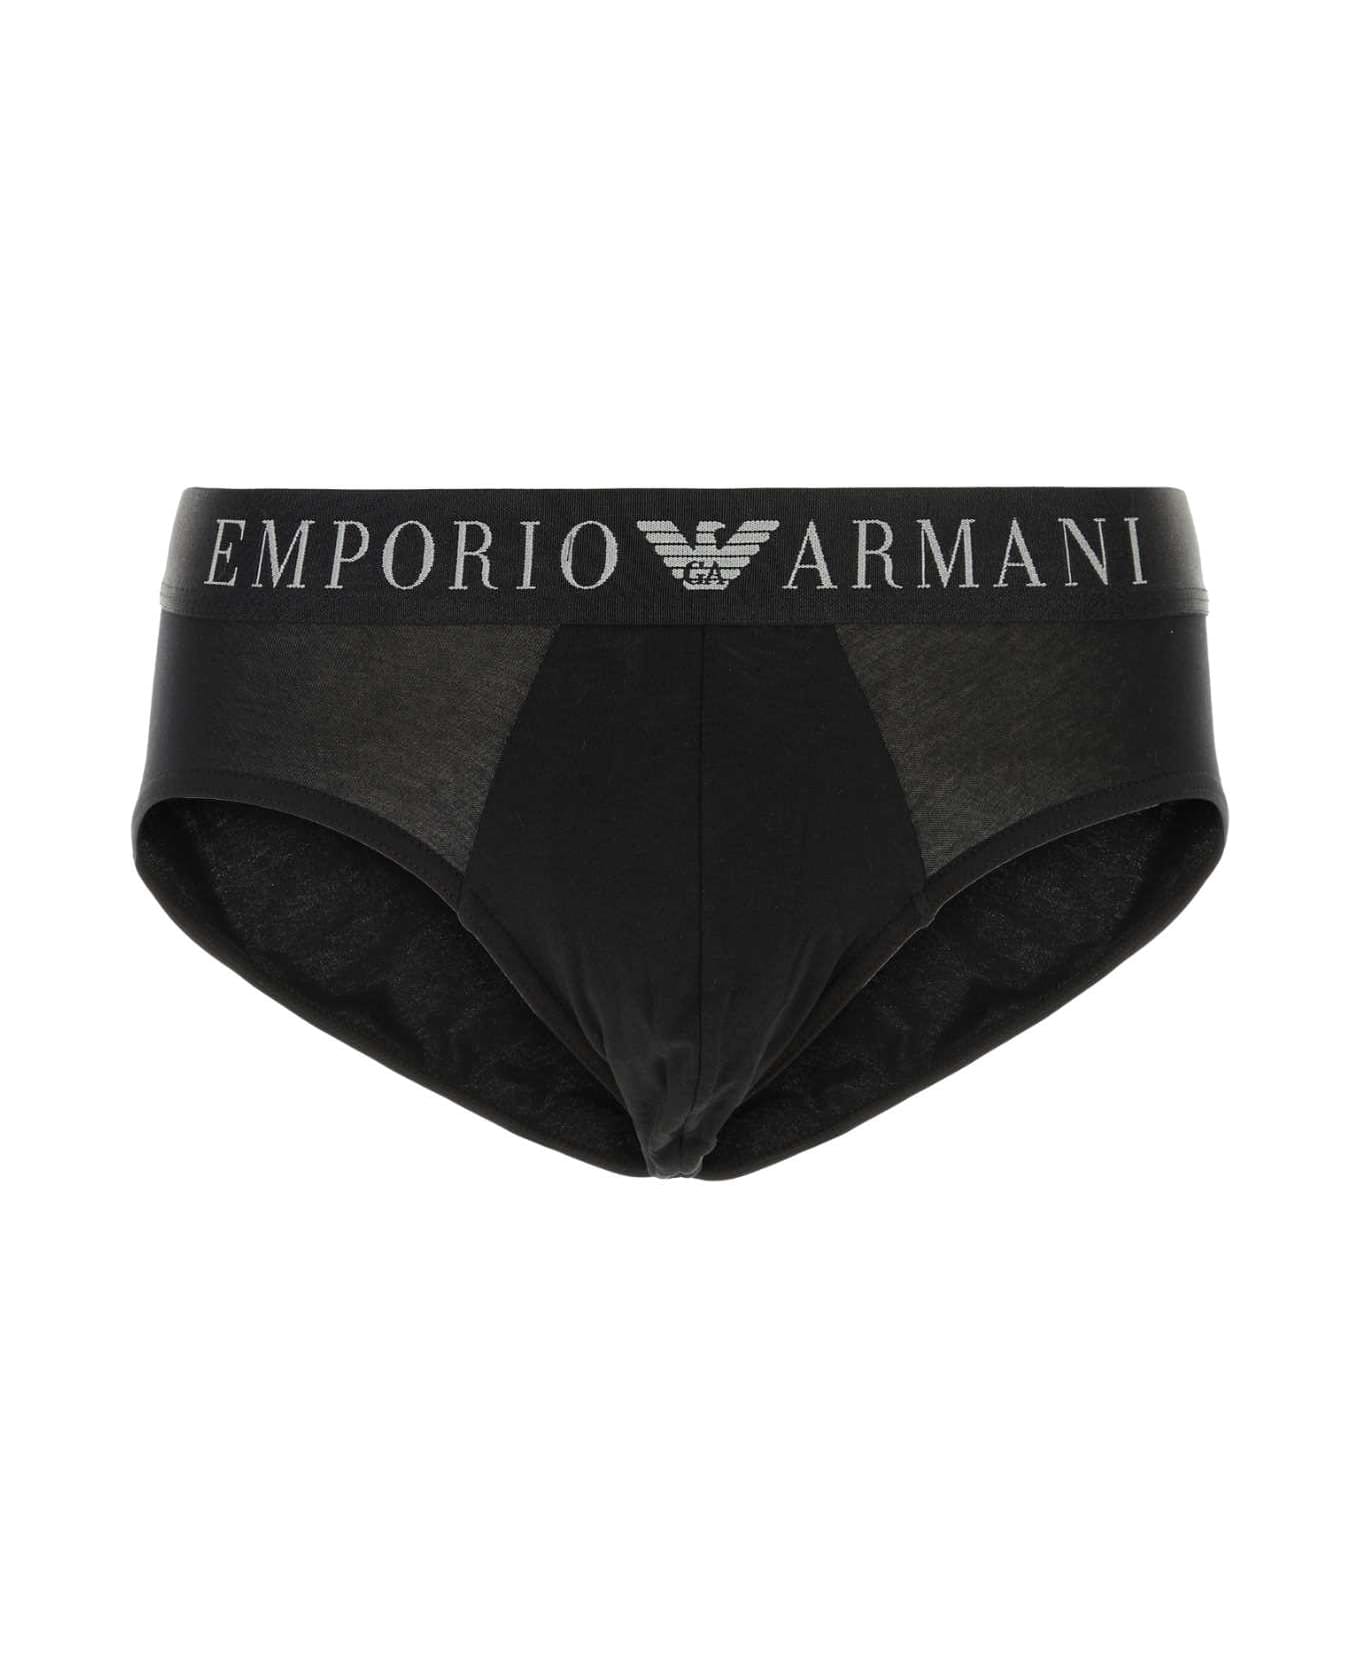 Emporio Armani Black Stretch Cotton Brief - 00020